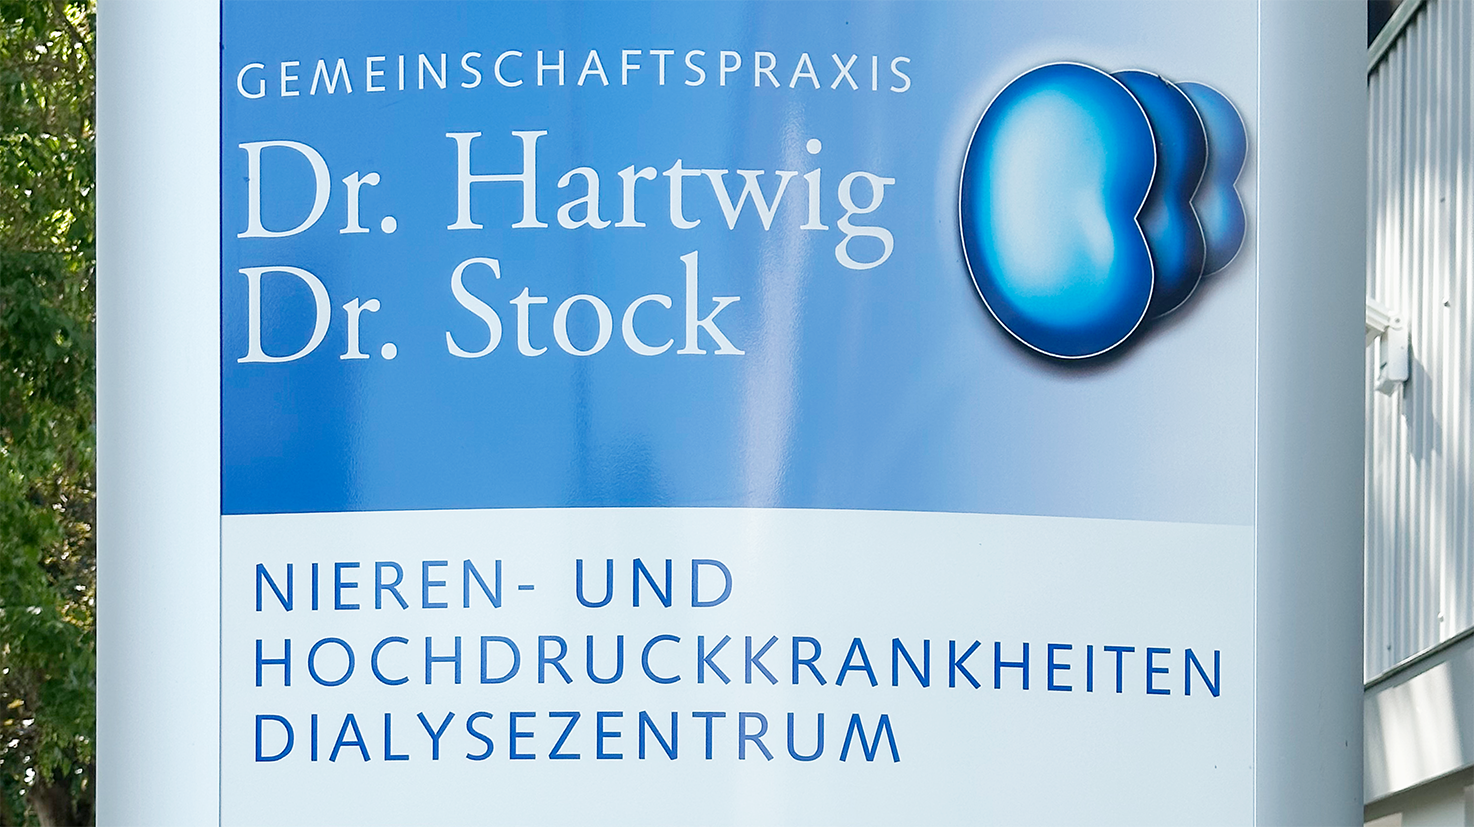 Feriendialyse Gemeinschaftspraxis Dr. Hartwig und Dr. Stock Nephrologie